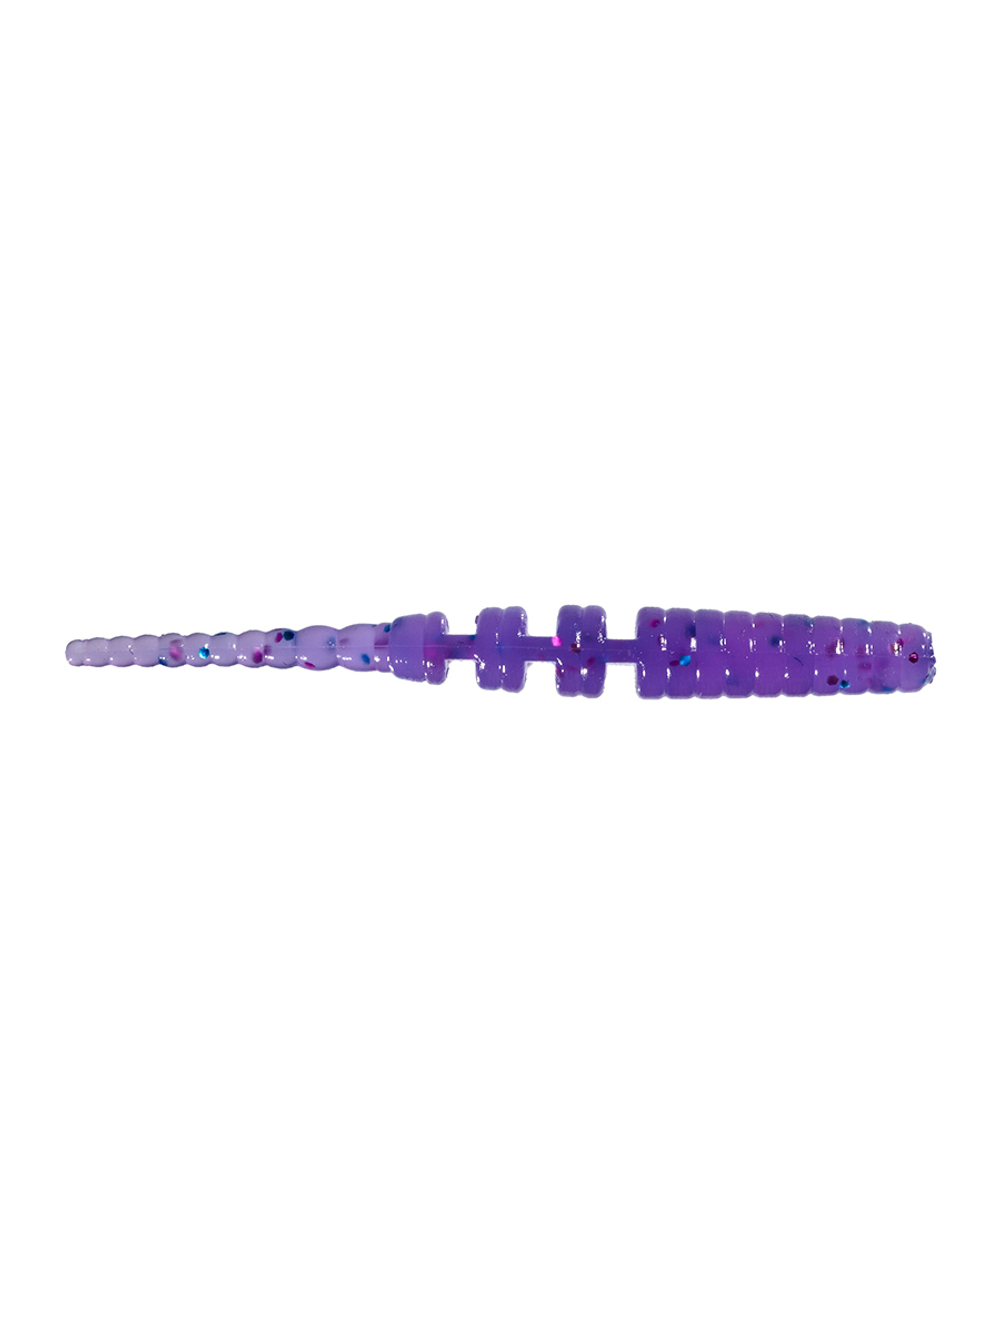 Приманка ZUB-CRAZY LEECH 50мм-10шт, (цвет 610) фиолетовый с блестками